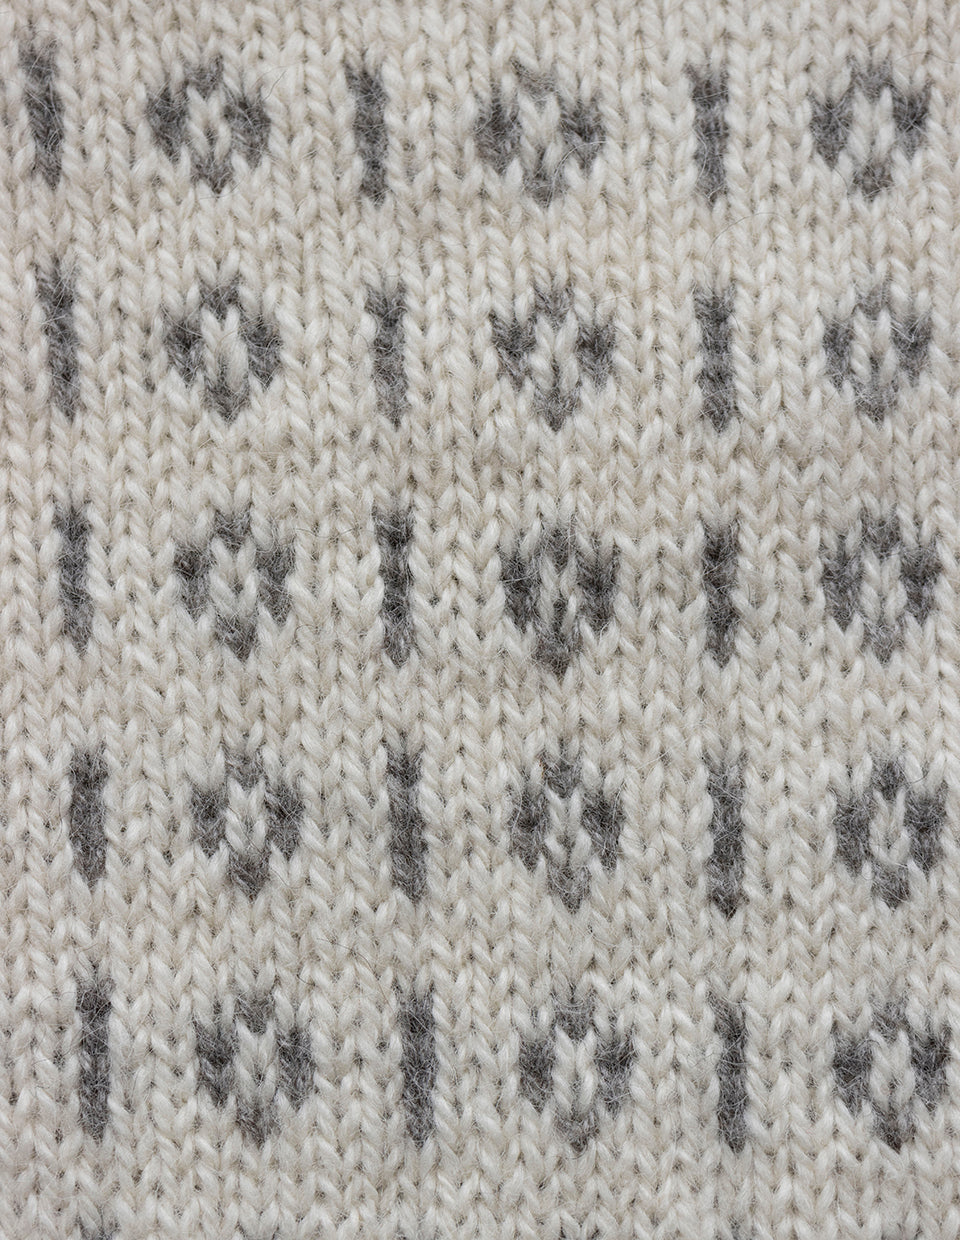 Knut sweater, knitting kit